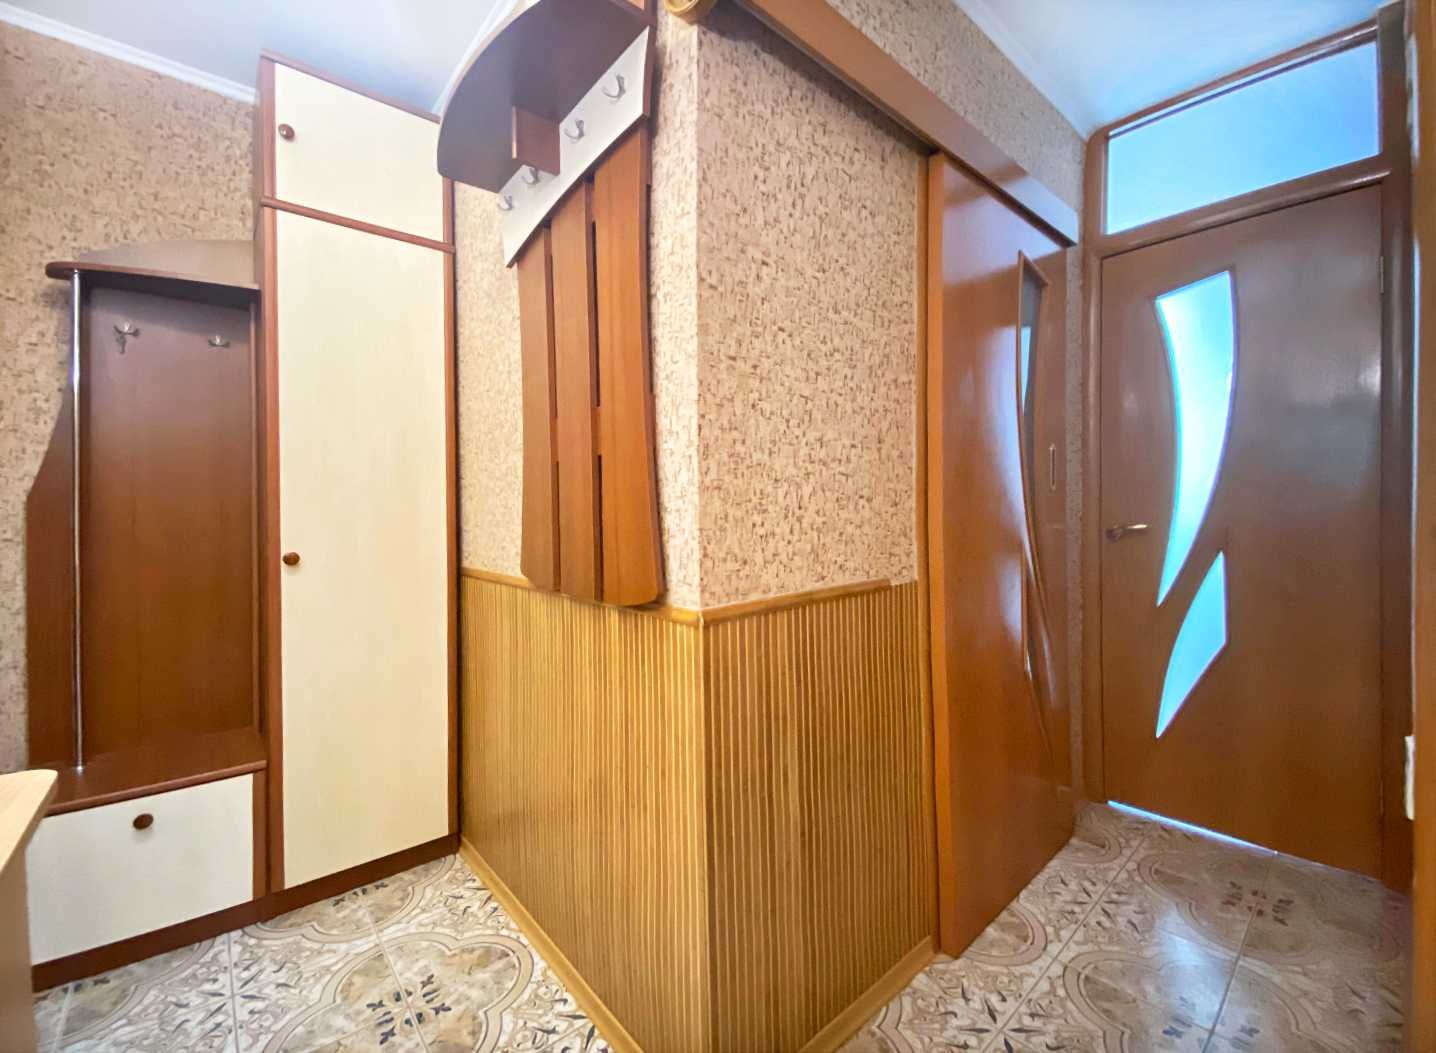 1 ком квартира с кап ремонтом на Покровском (Коммунар) (710233)